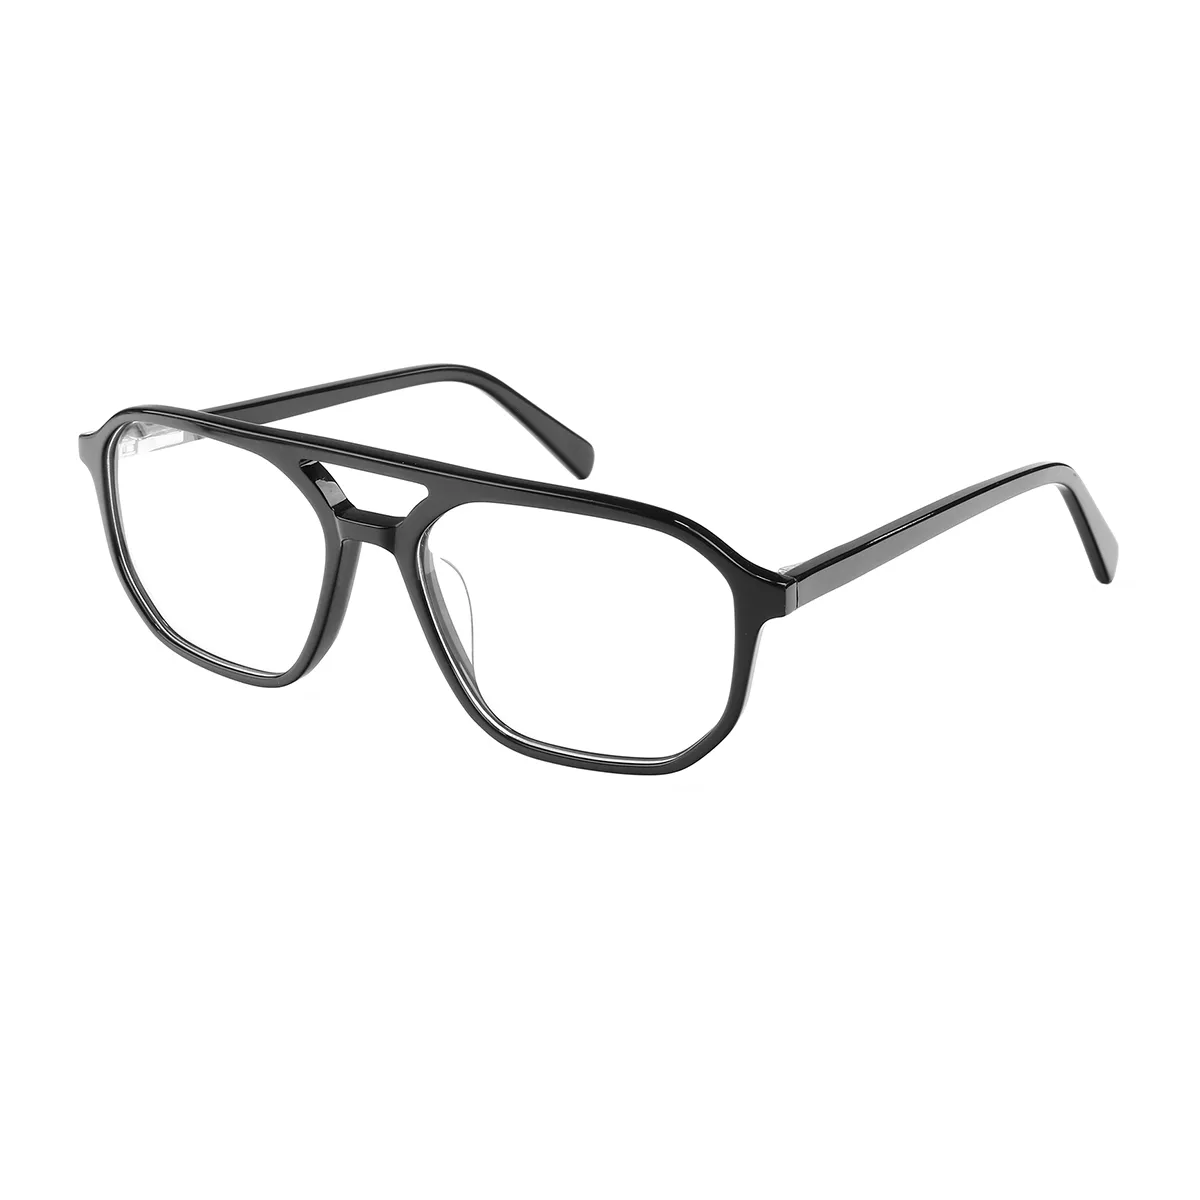 Sandy - Aviator Black Glasses for Men - EFE